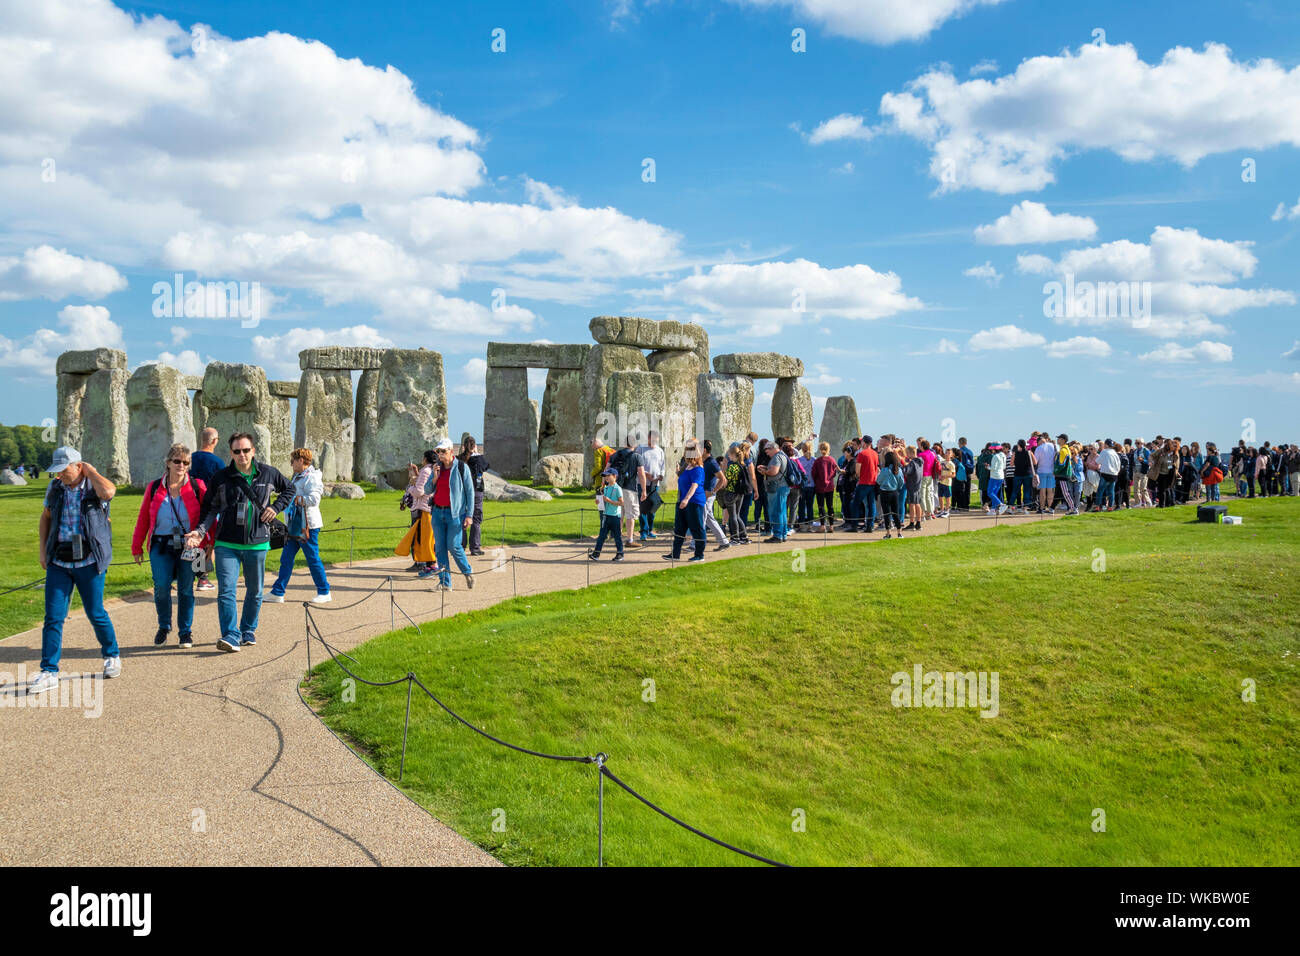 Les foules au cercle de pierres de Stonehenge Stonehenge près de Amesbury Wiltshire england uk go Europe Banque D'Images